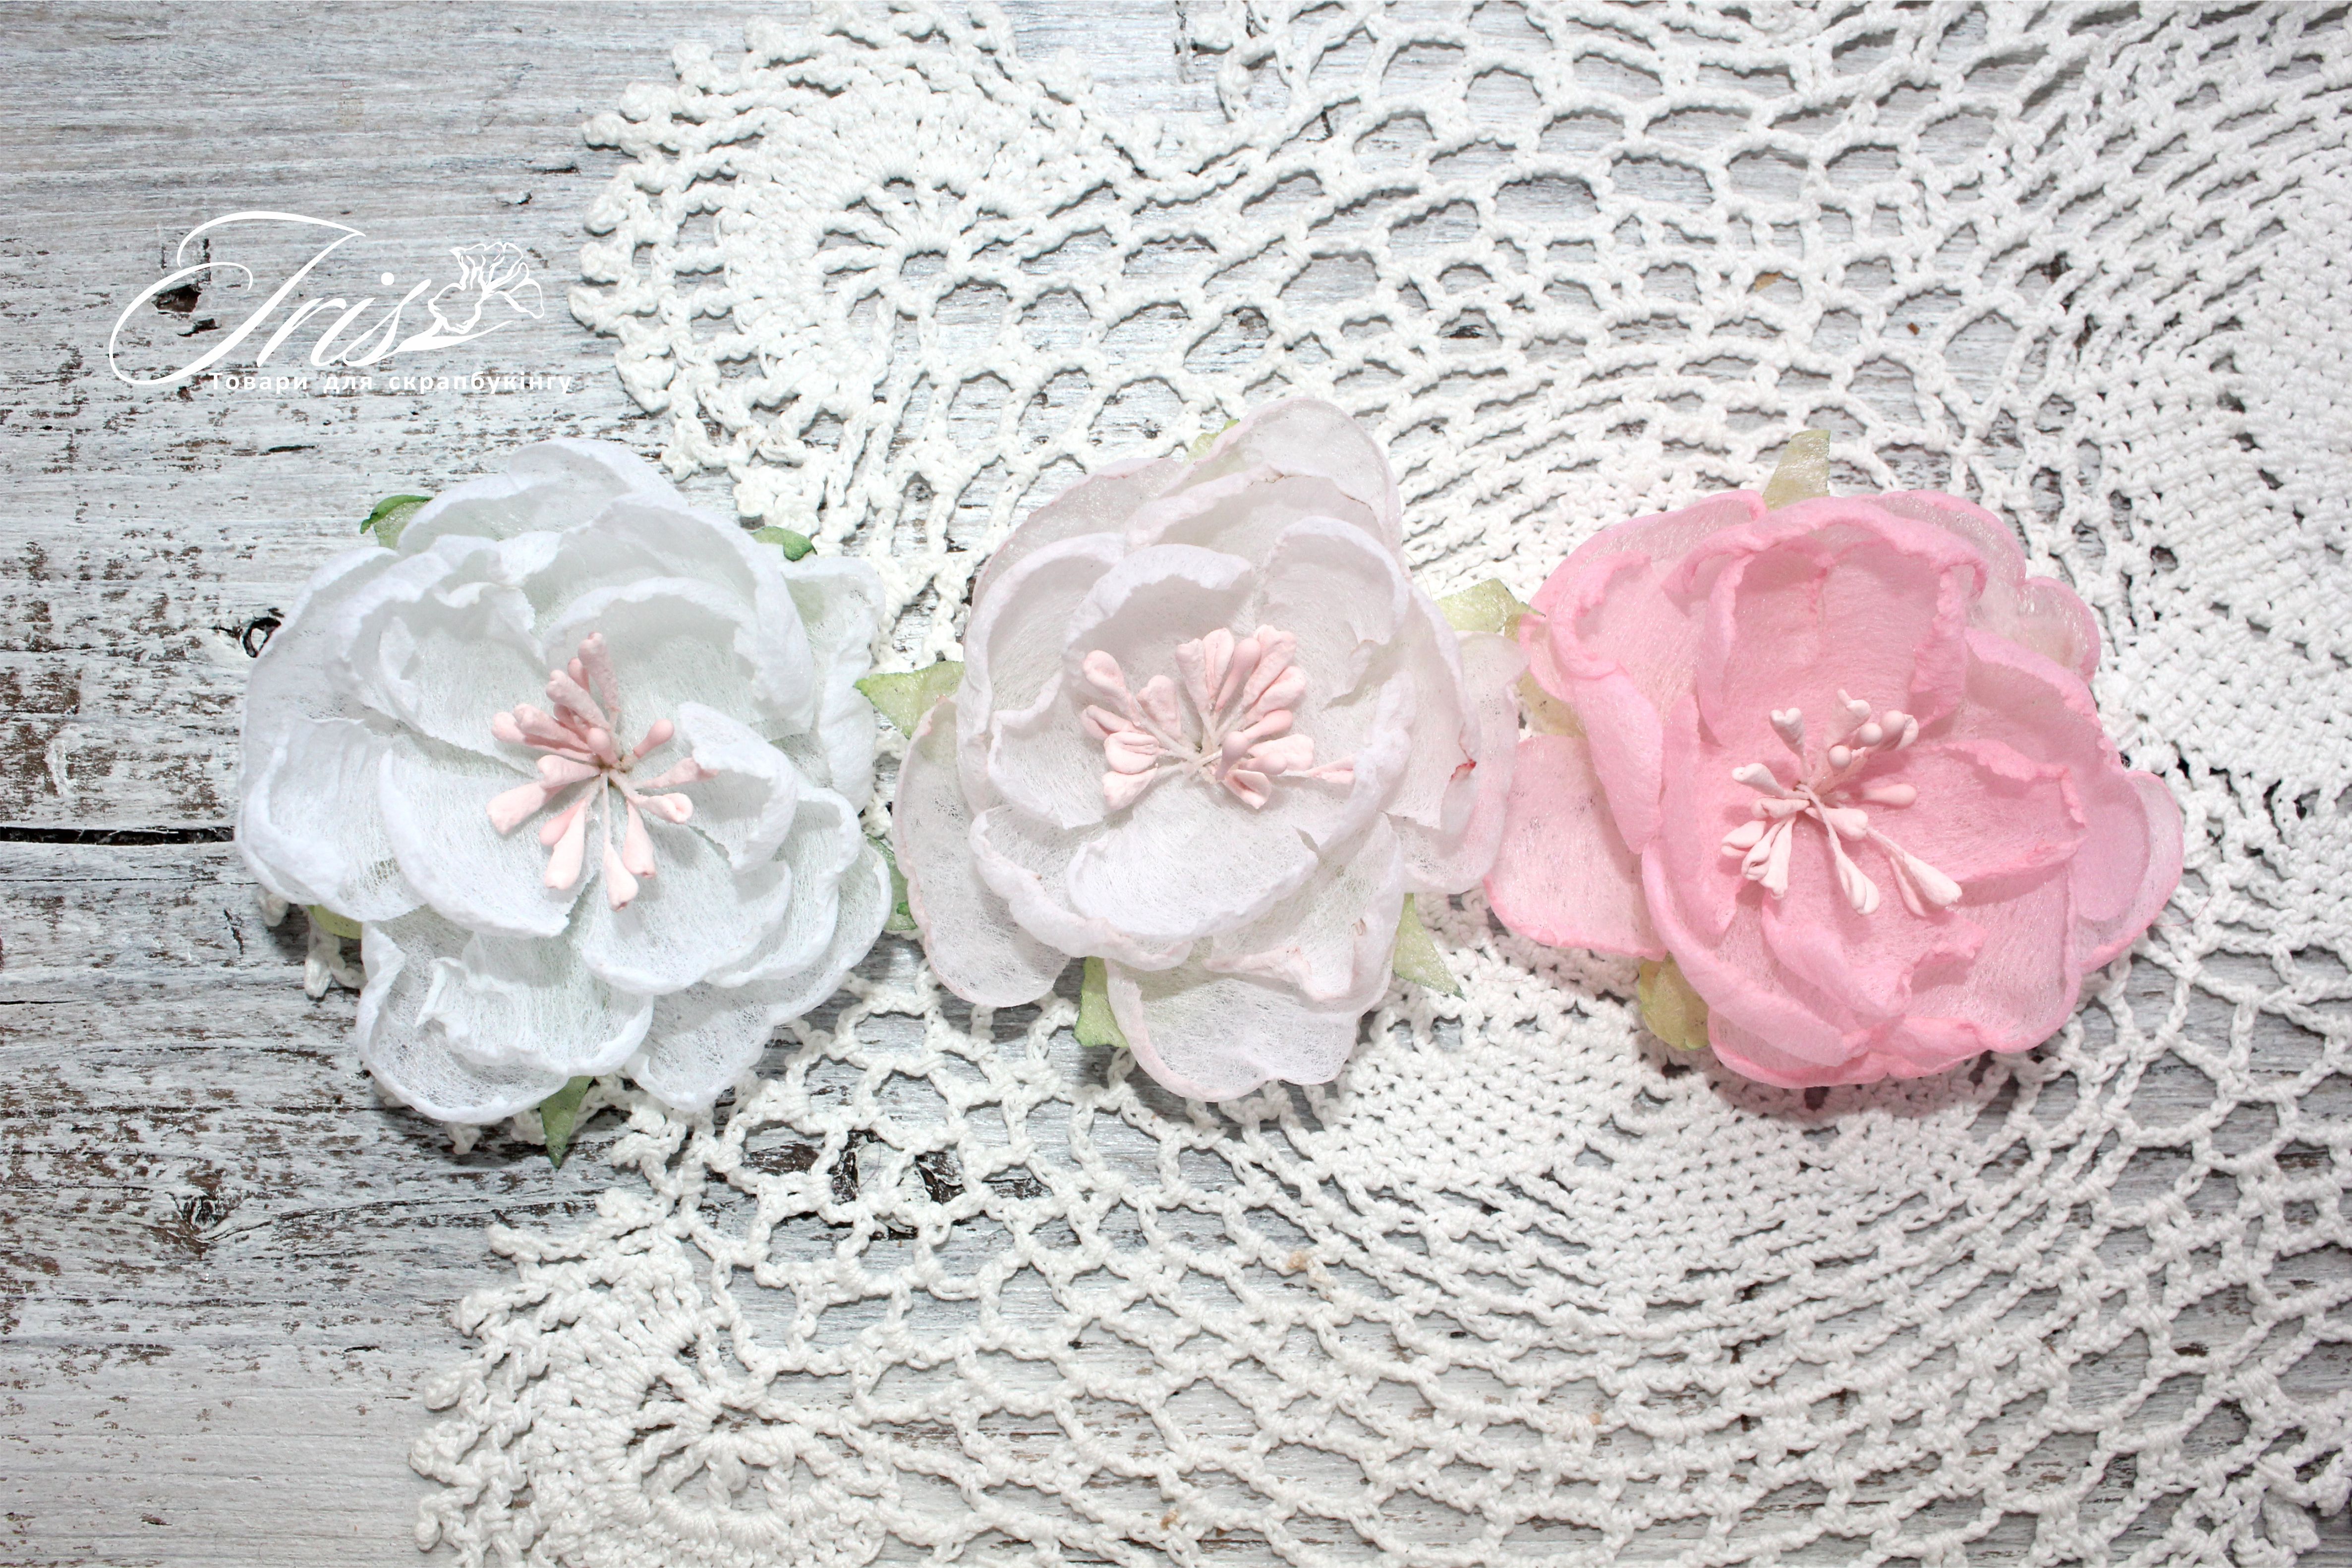 Набор цветов и декора, Royalty flowers Розовый микс, 45-60 мм, 9 шт, Iris